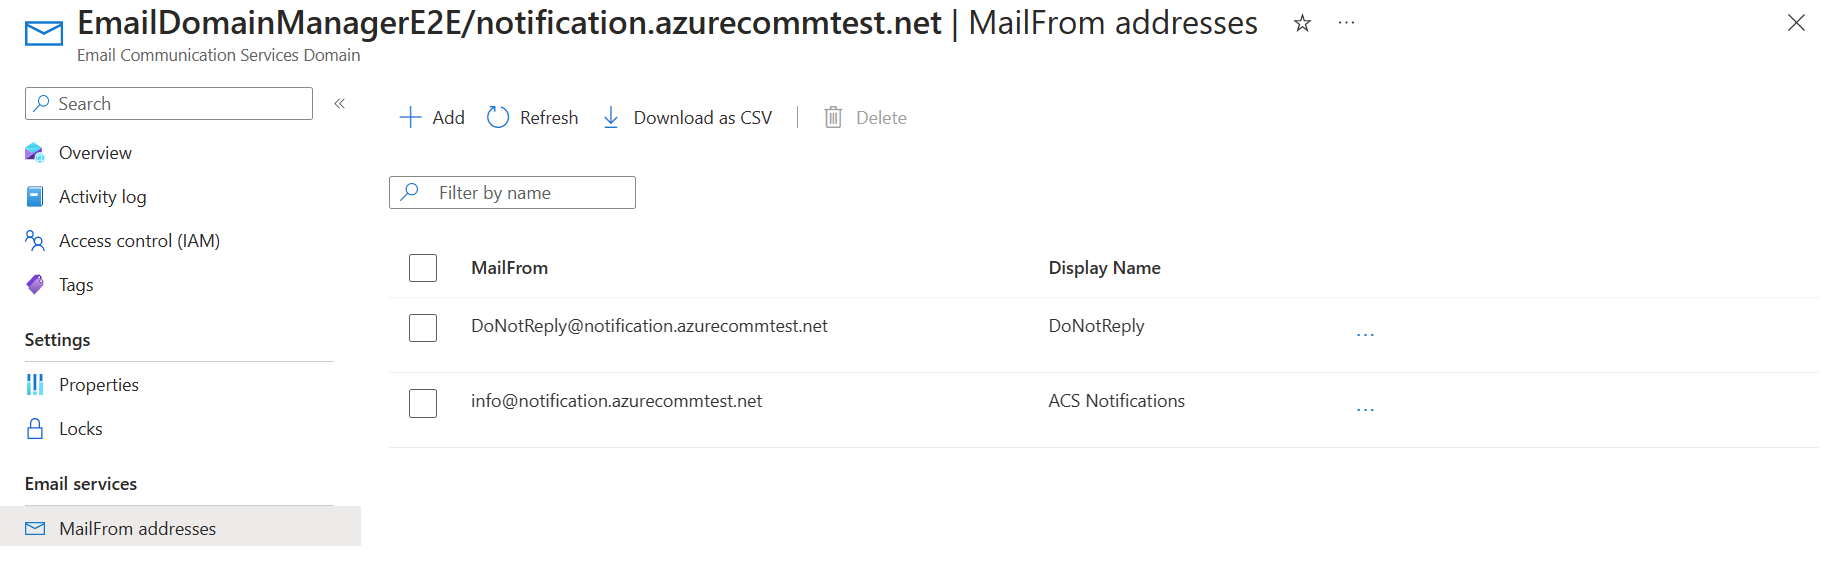 Screenshot che mostra l'elenco degli indirizzi Mailfrom con i valori aggiornati.